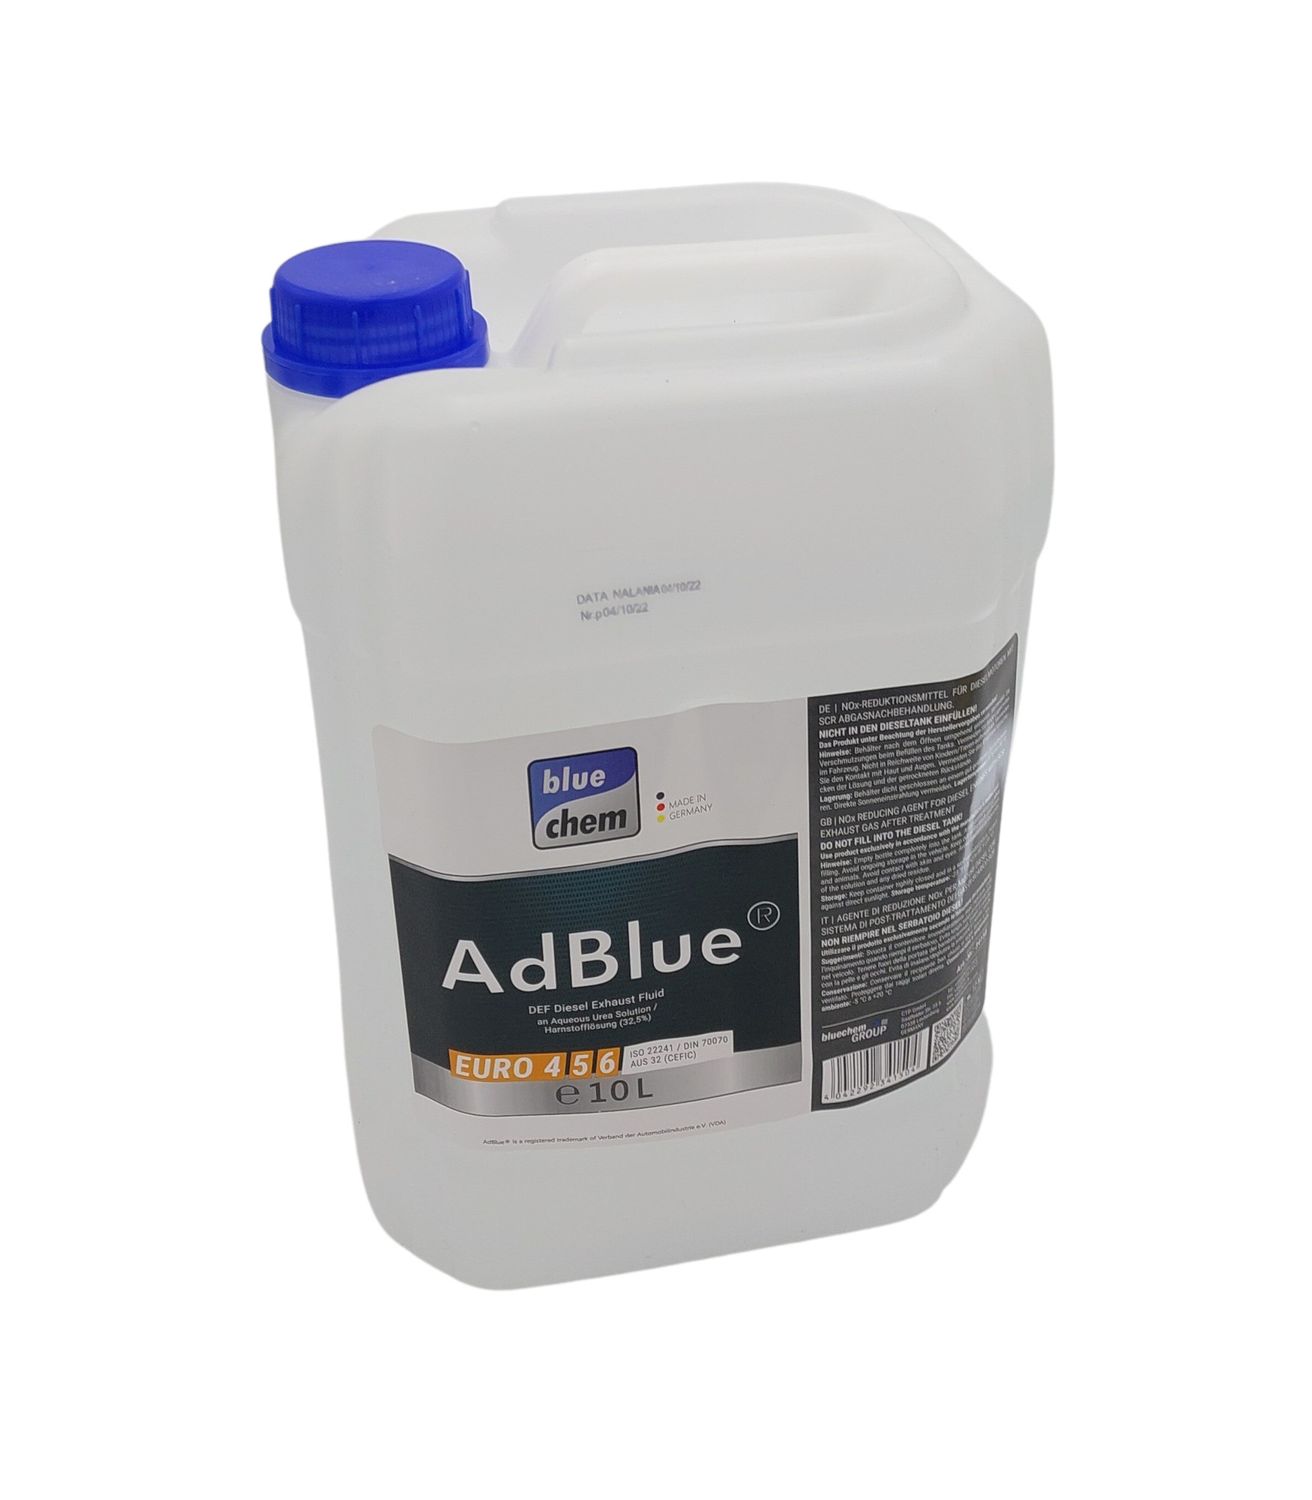 10l Kanister bluechem AdBlue